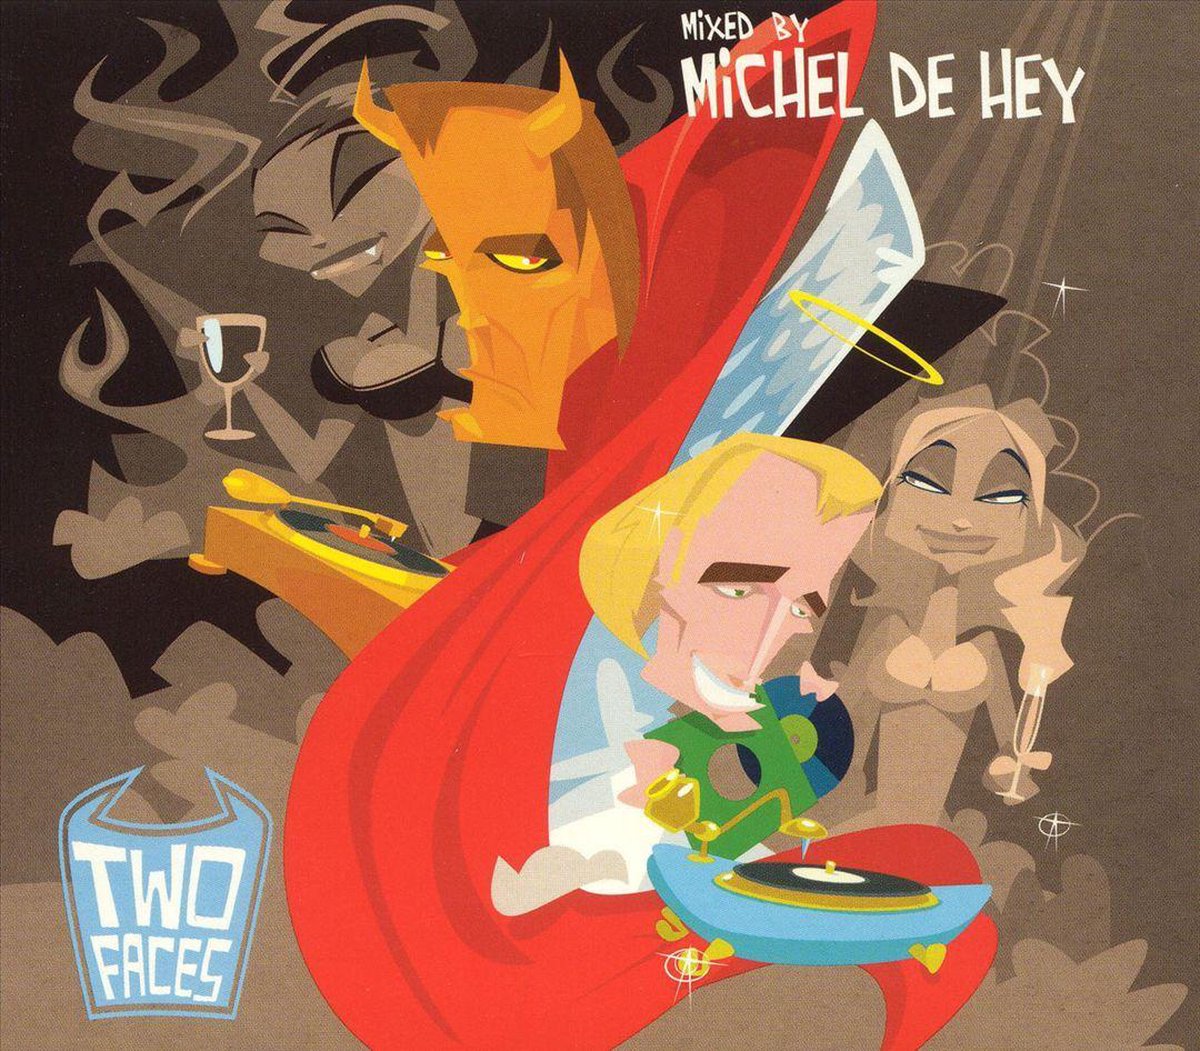 Michel de Hey Presents 2 Faces - various artists